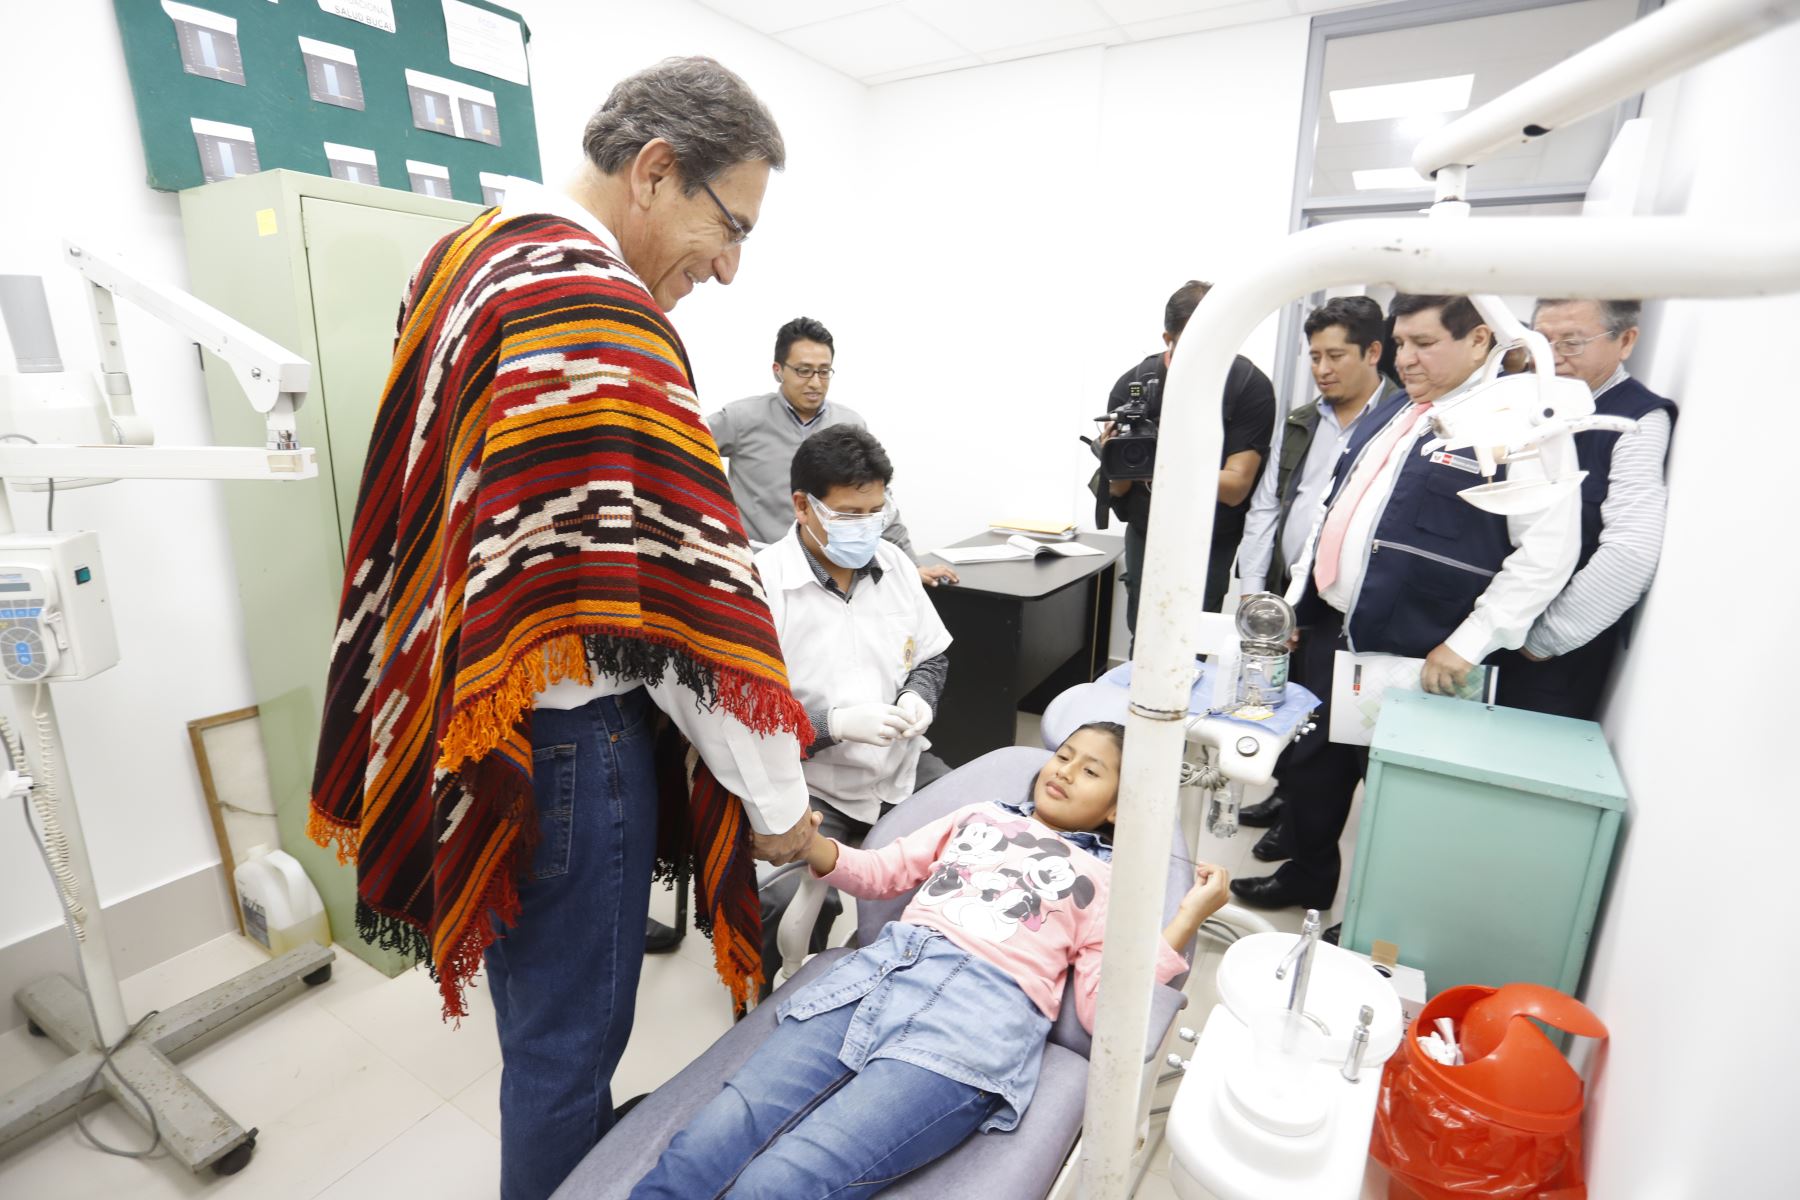 El presidente Martín Vizcarra inspeccionó el centro de salud de contingencia de Machu Picchu, región Cusco. Foto: Prensa Presidencia.